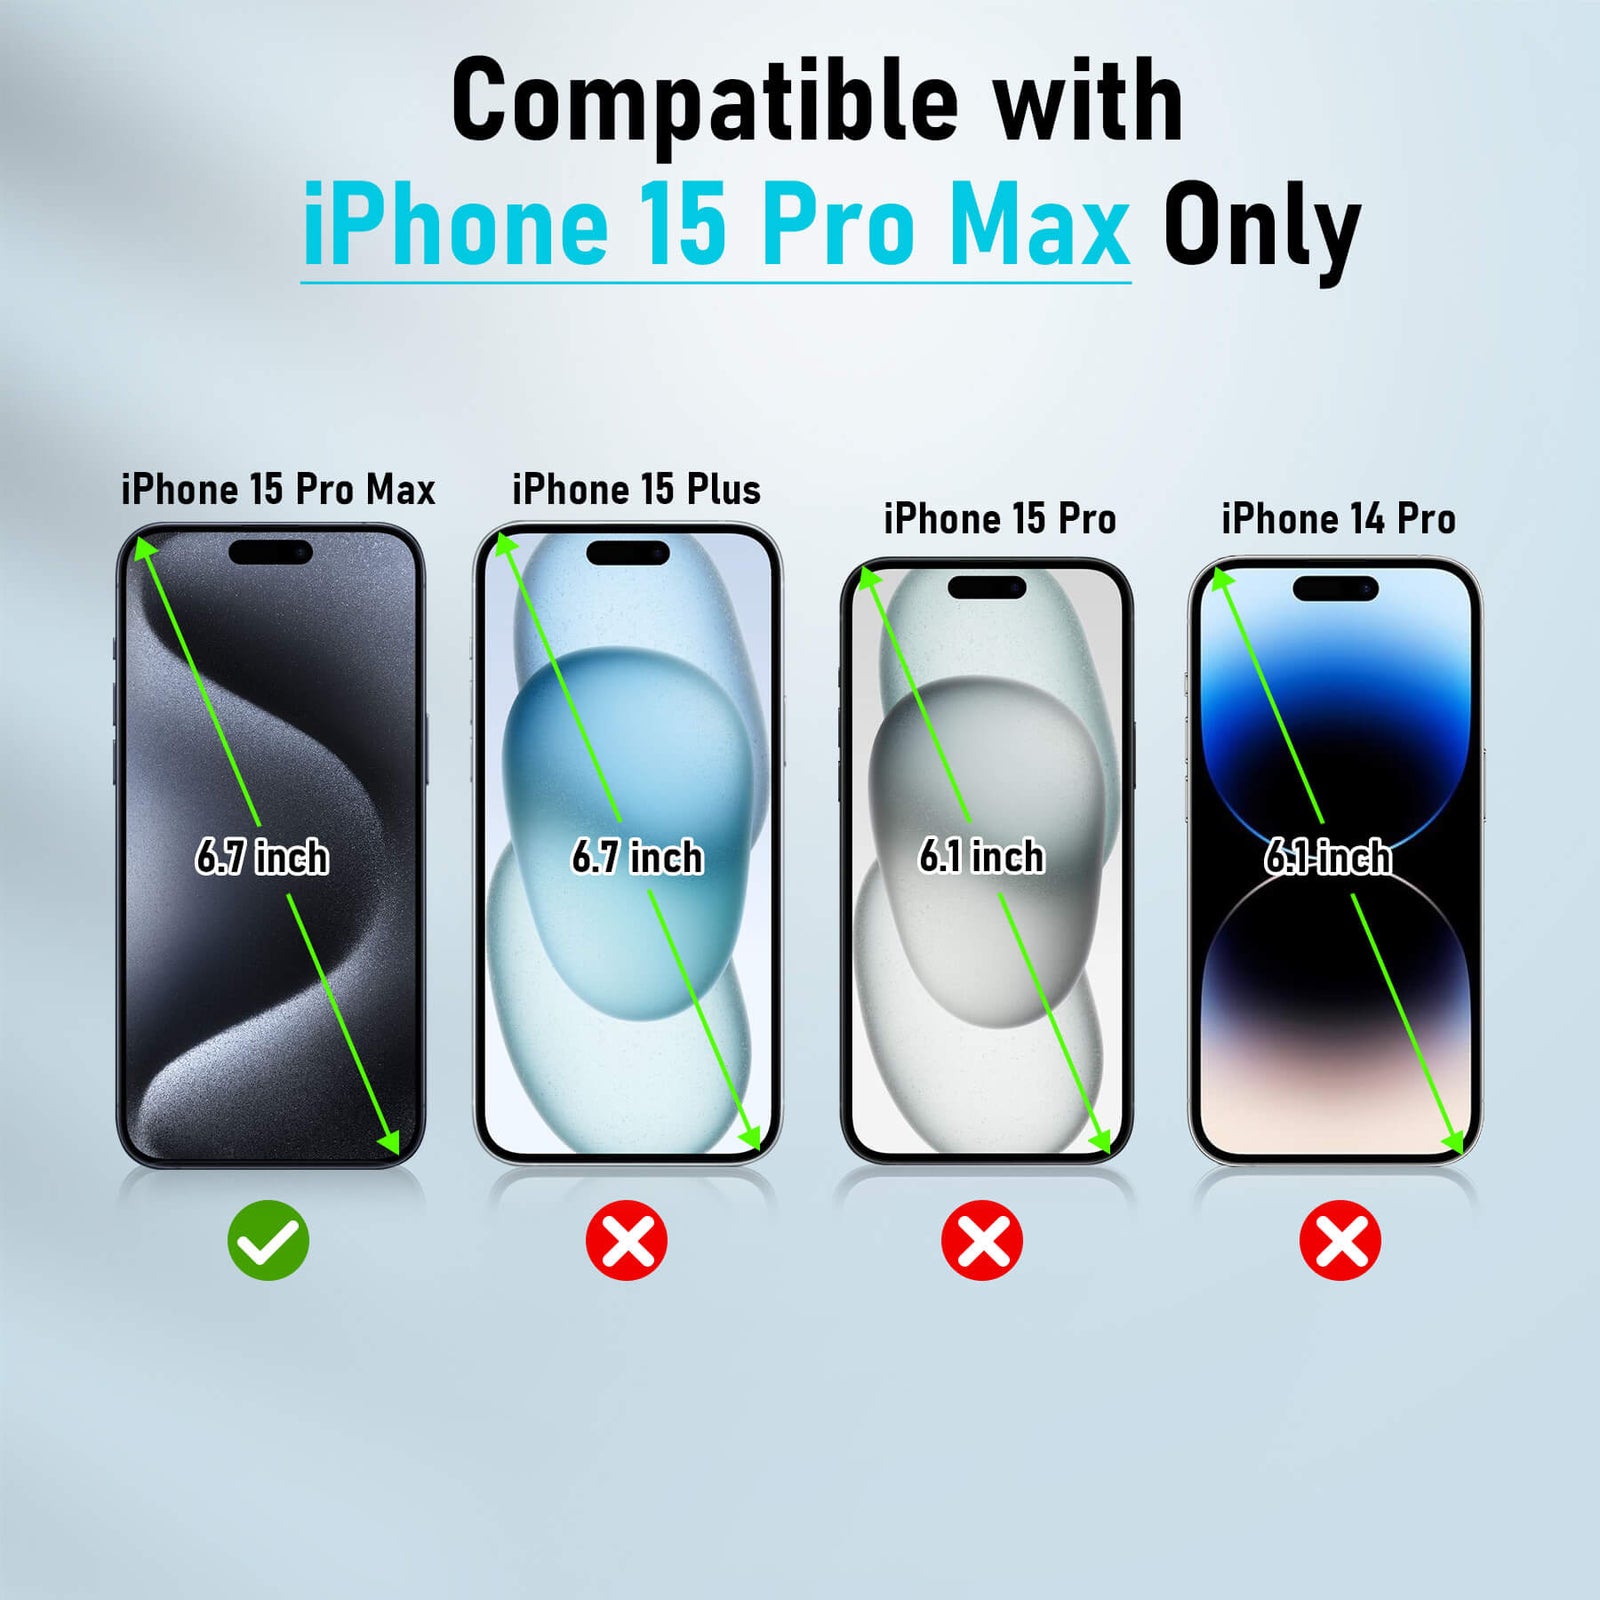 iPhone 15 Plus Vs iPhone 15 Pro Vs iPhone 15 Pro Max 